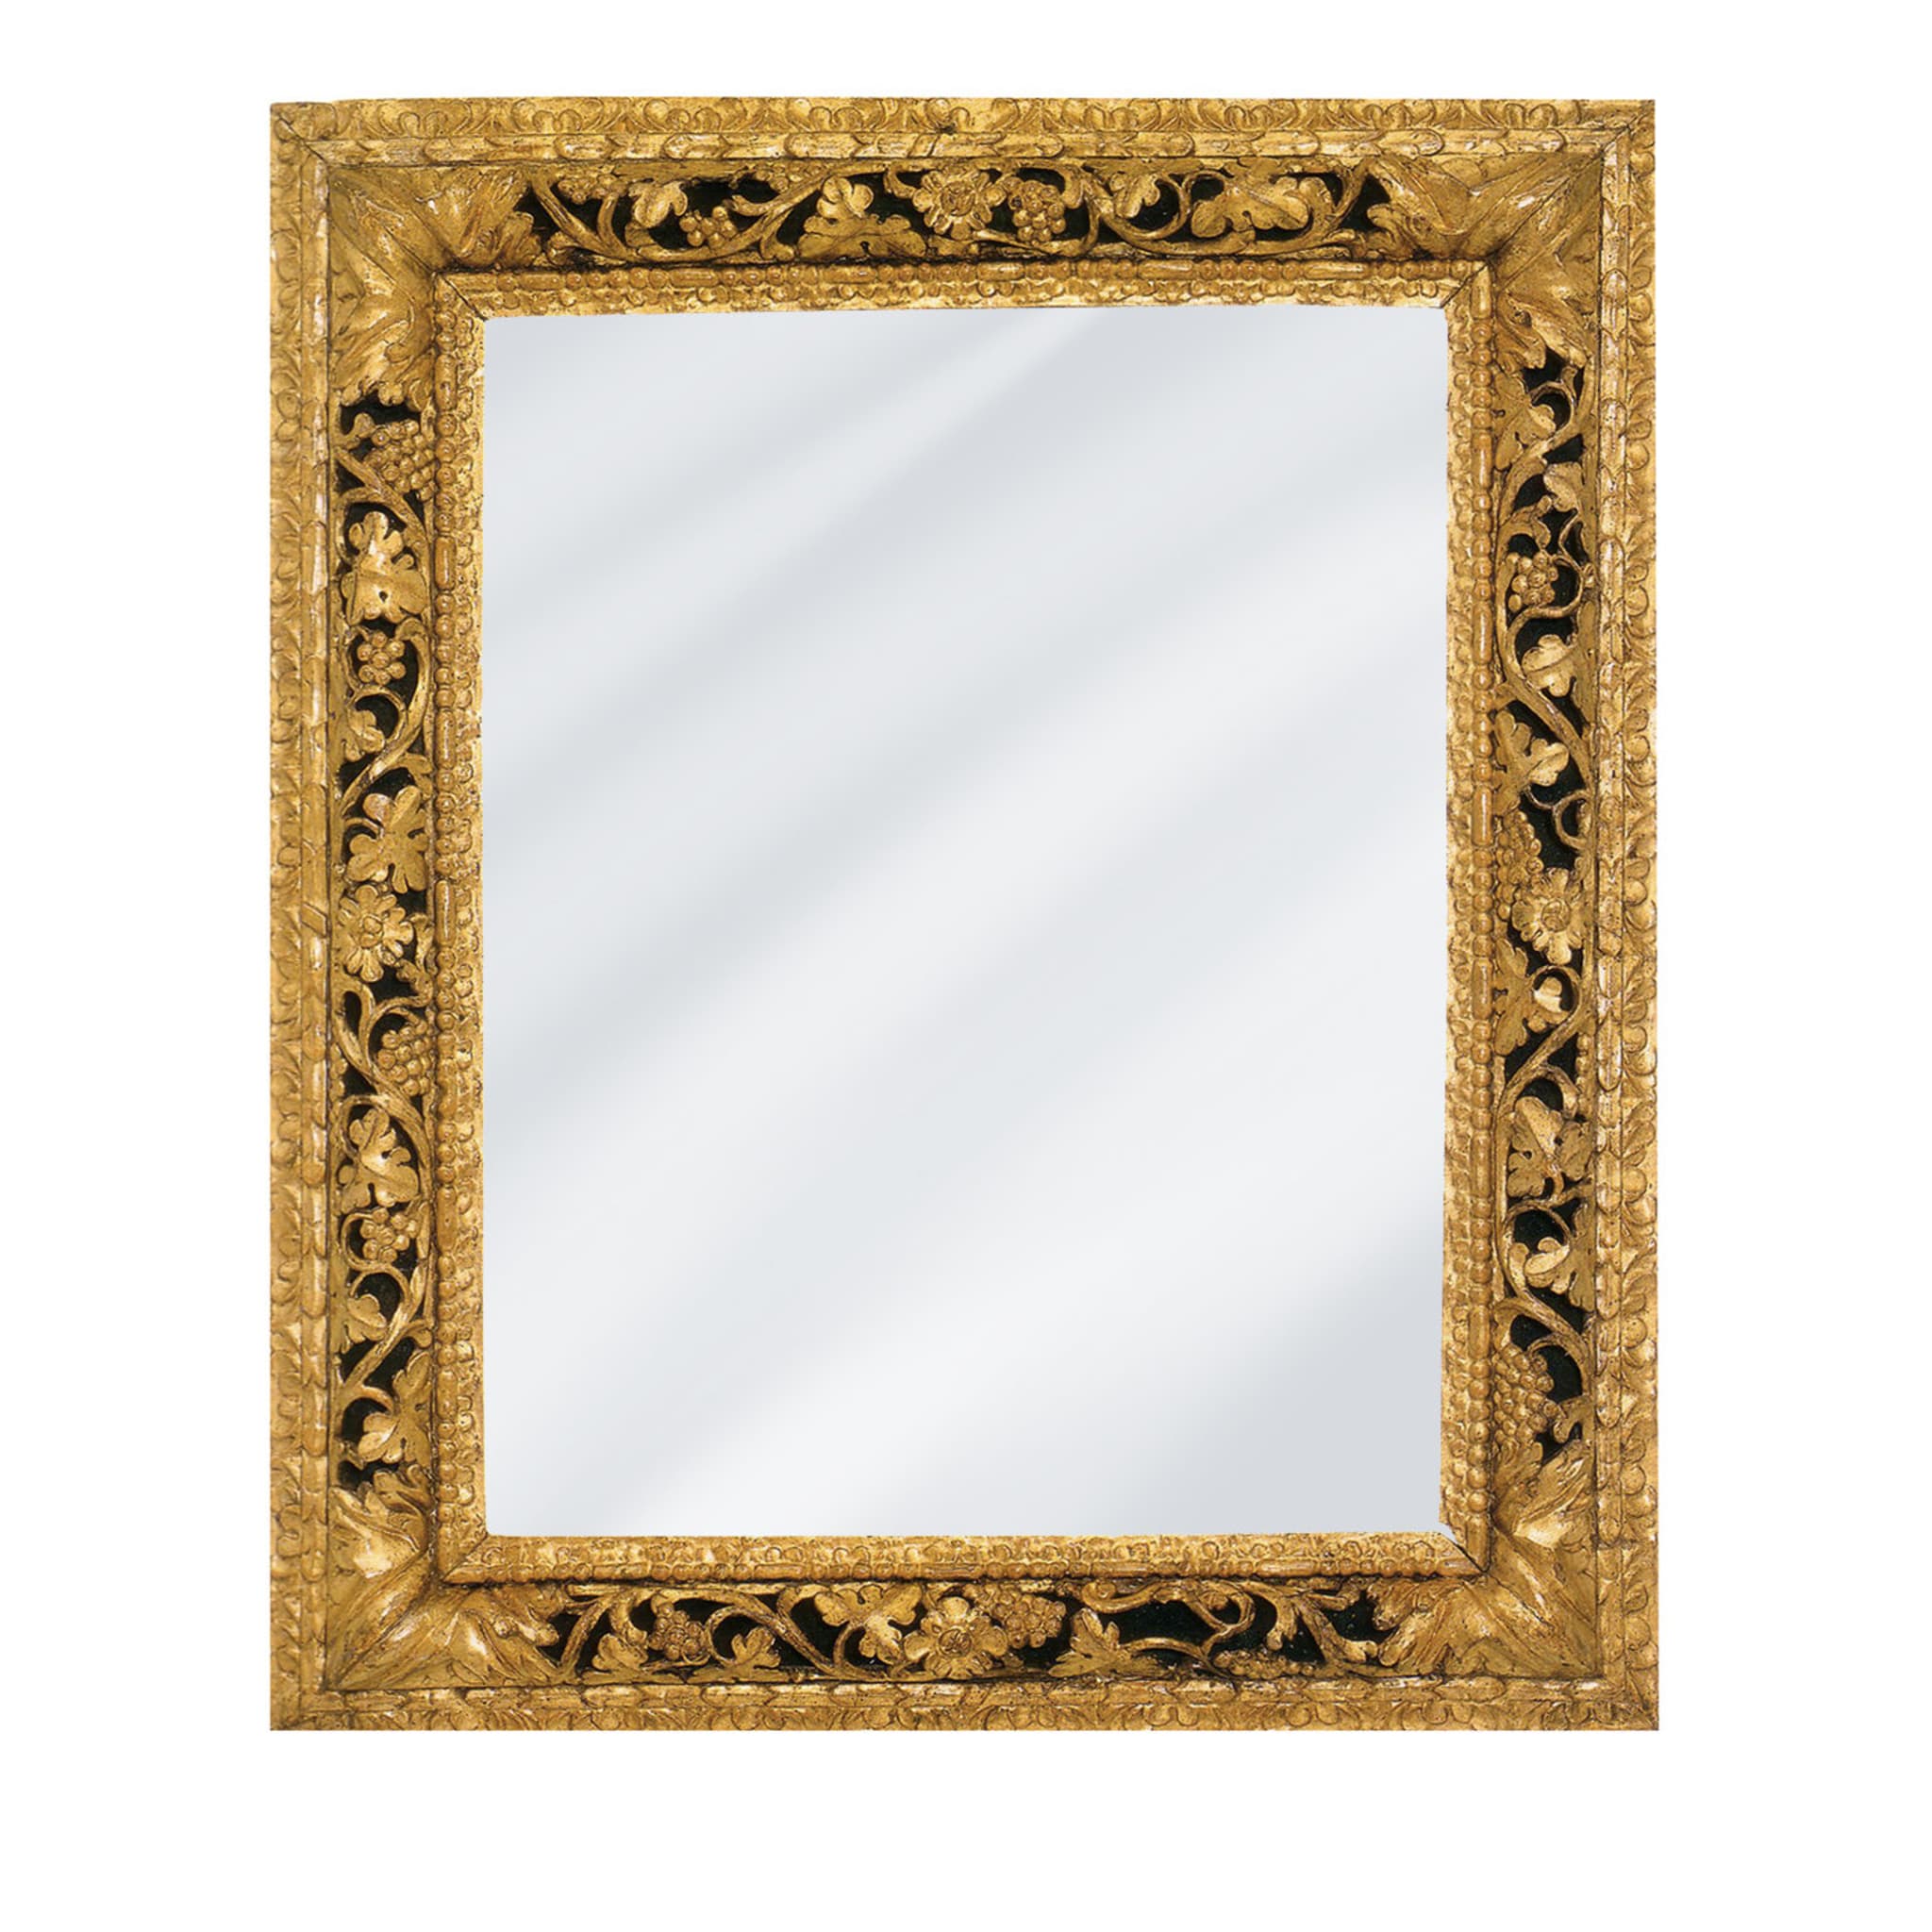 Traforo Veneto Framed Mirror - Main view